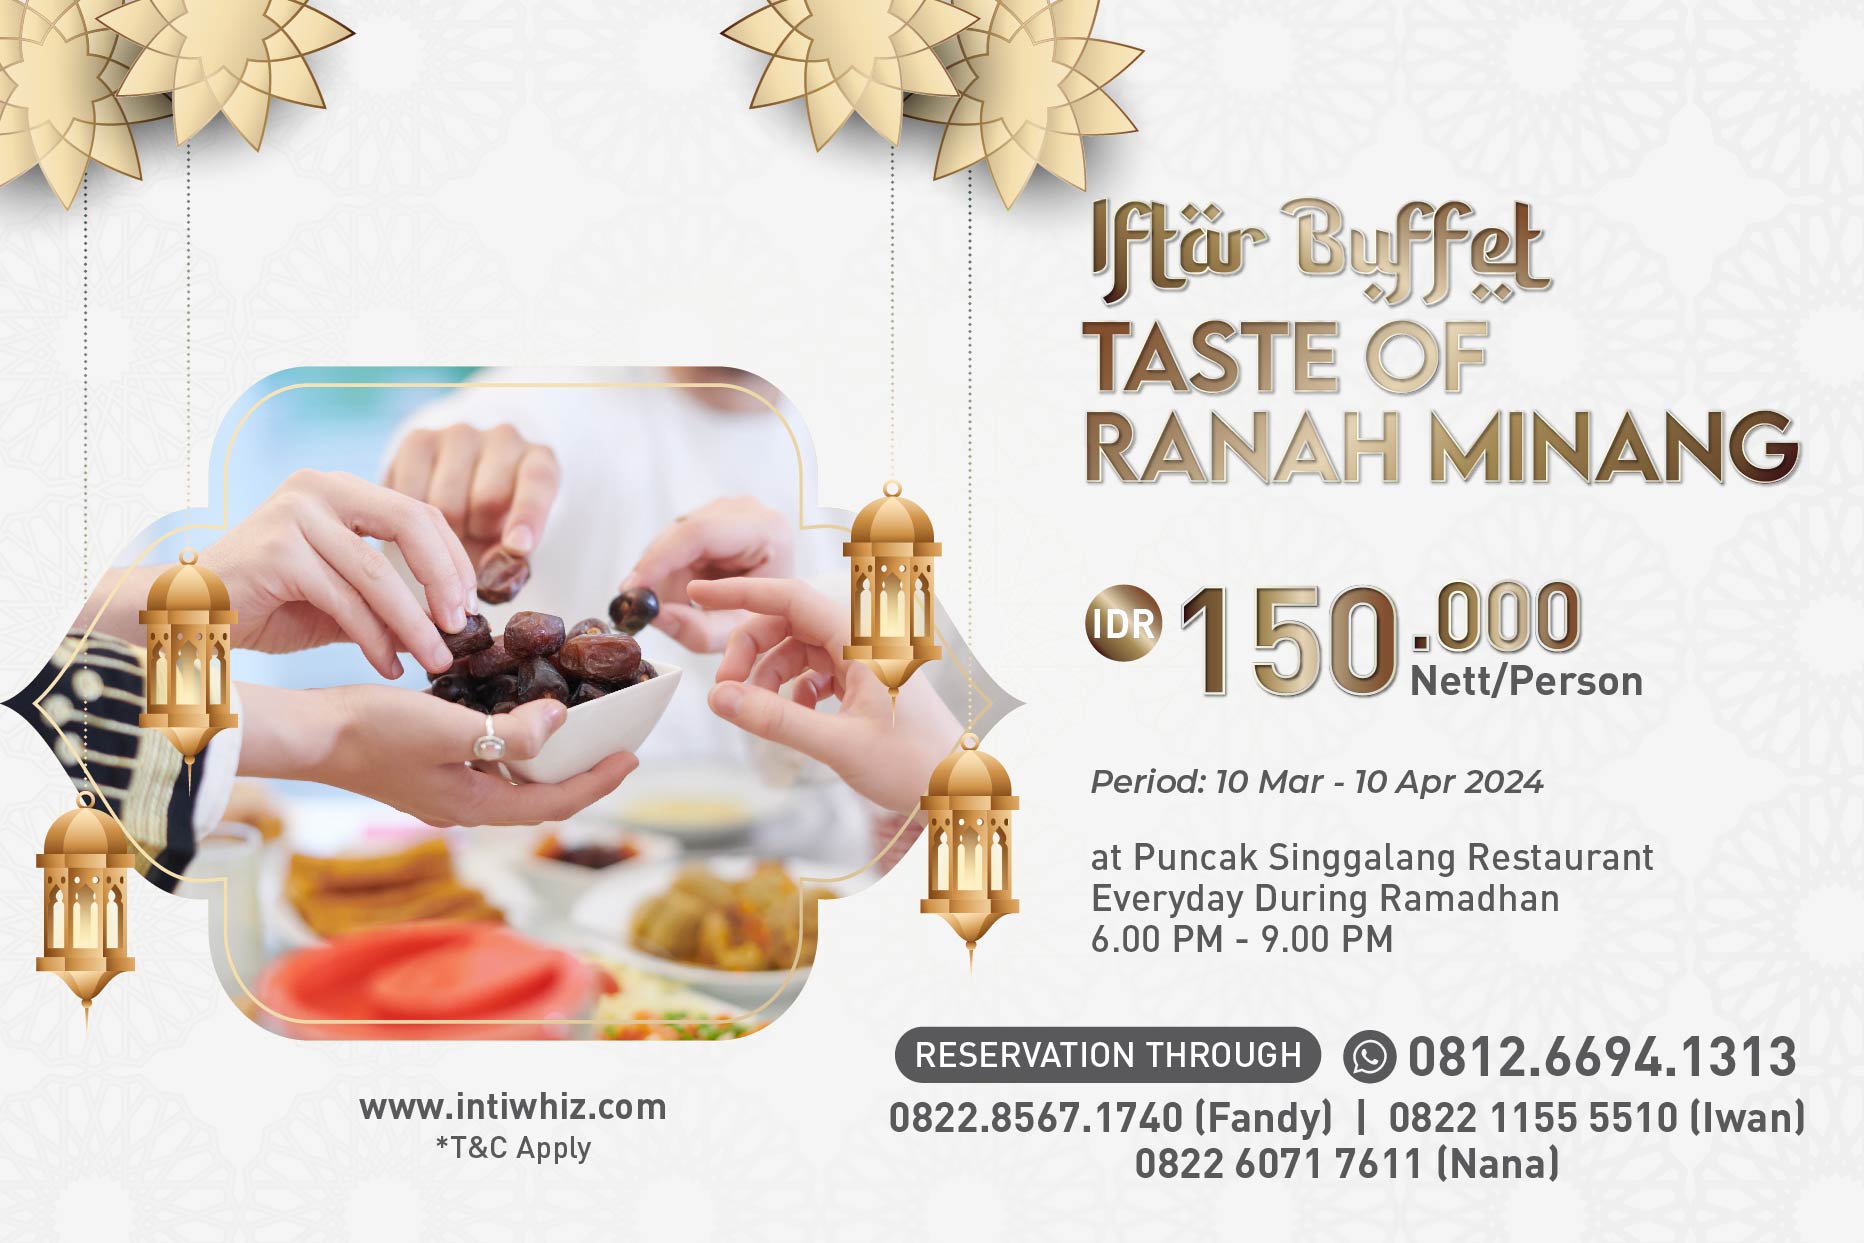 Iftar Buffet Taste of Ranah Minang